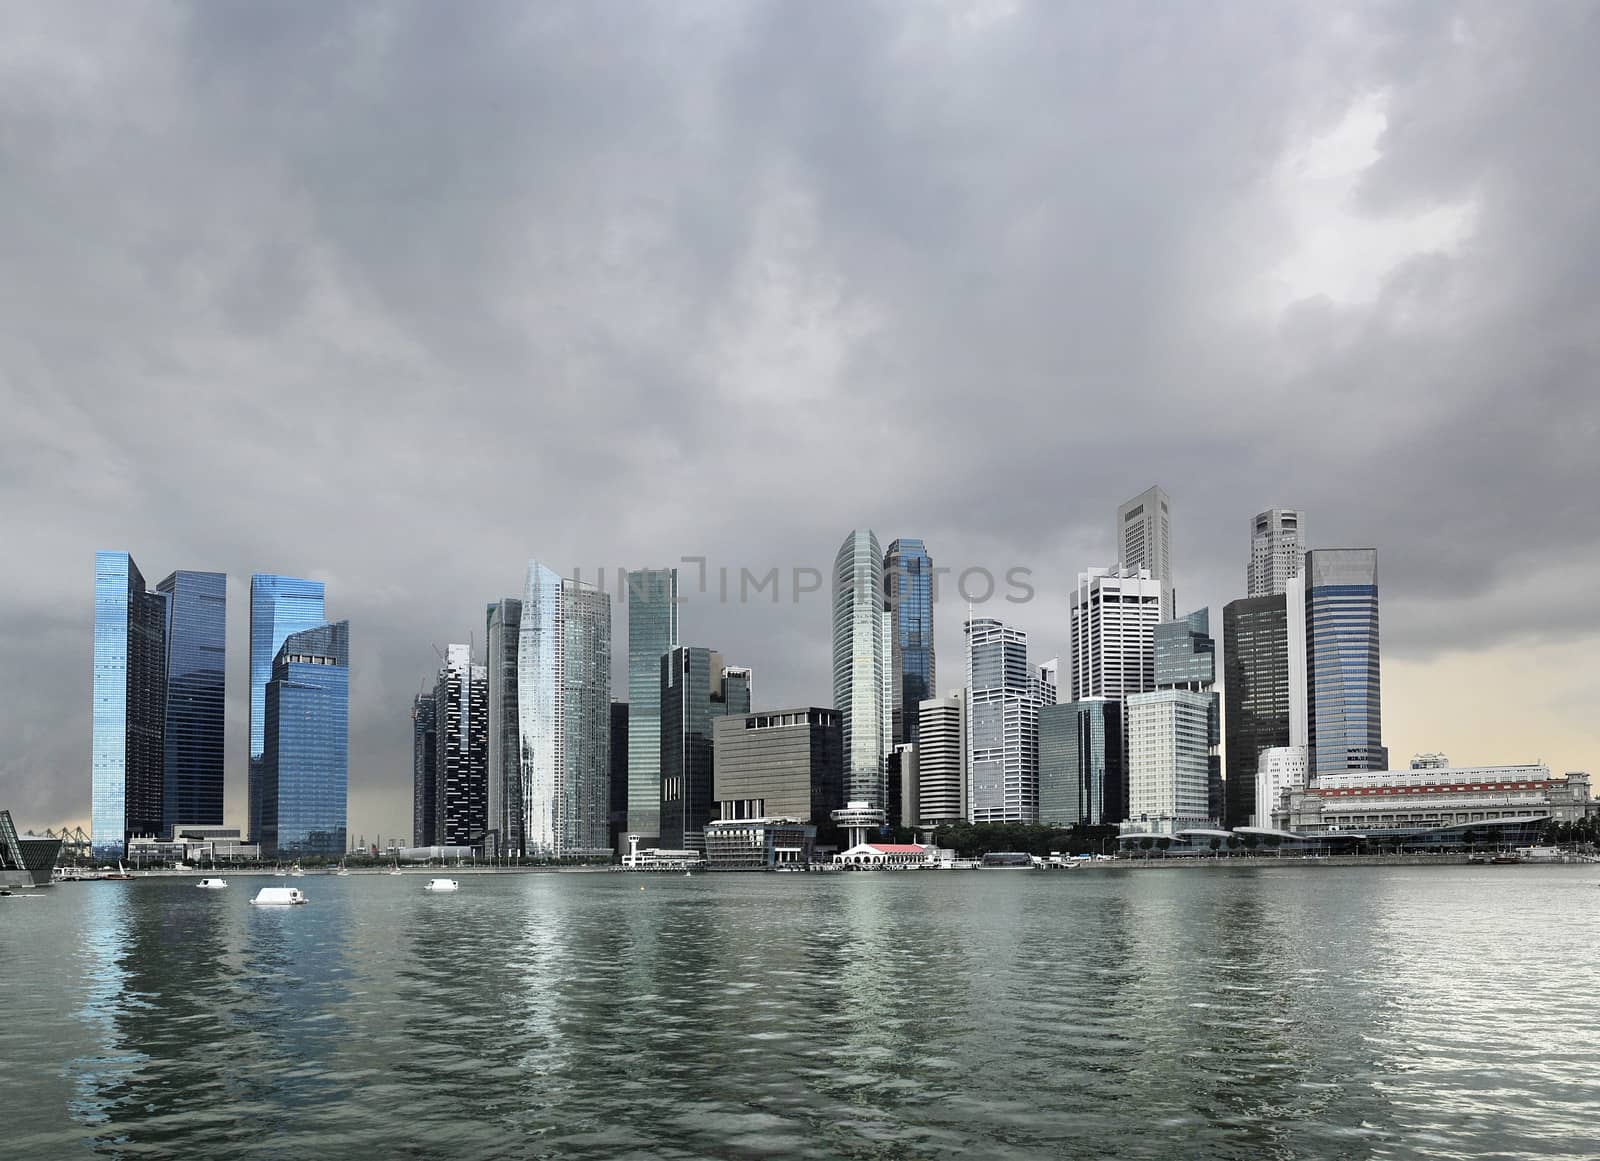 Skyline of Singapore with a dark stormy sky 